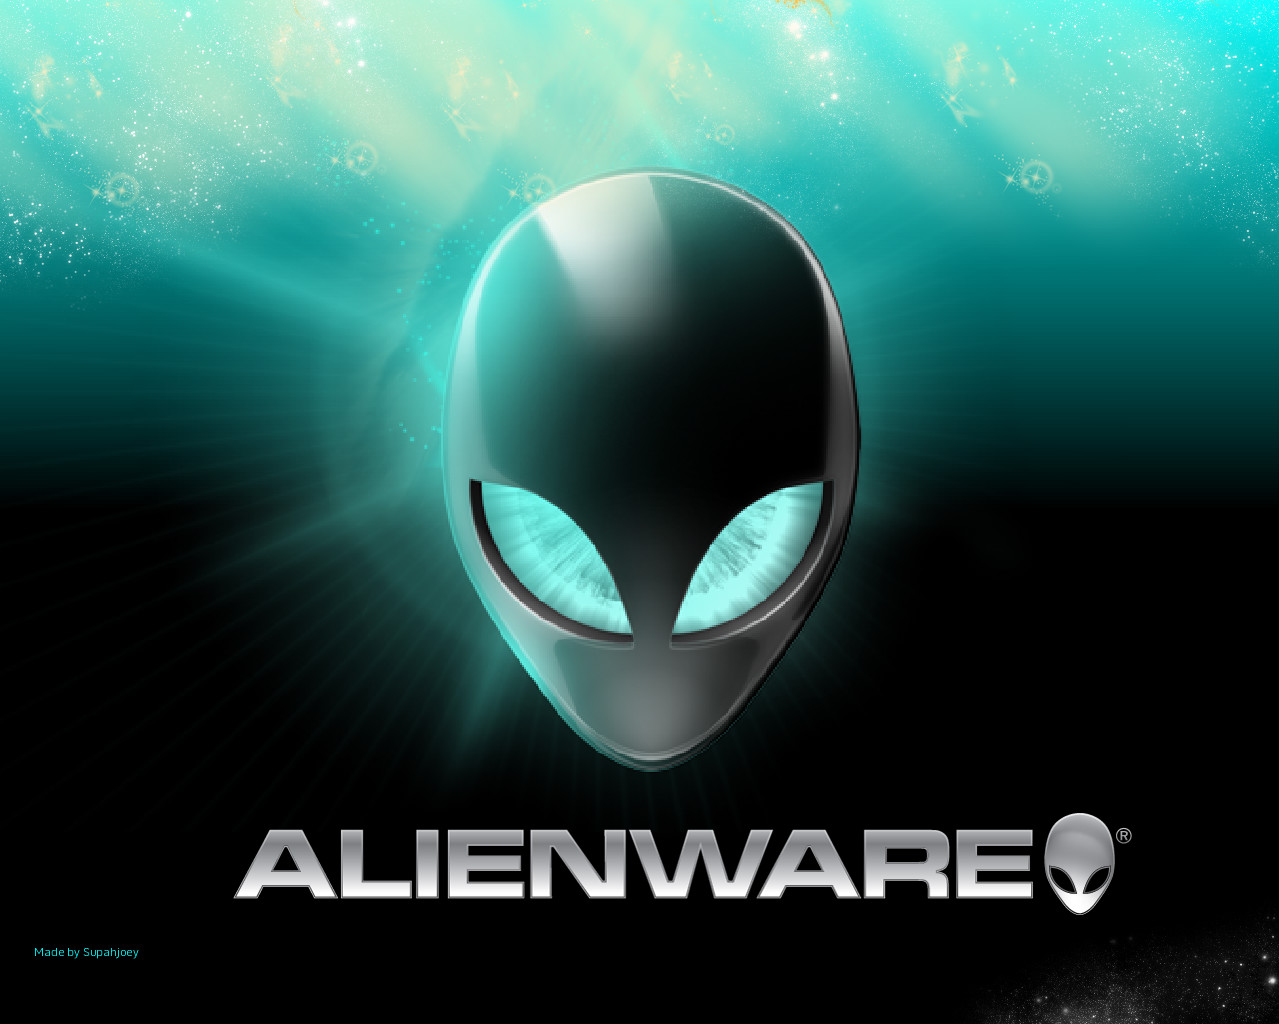 Alienware Wallpaper Hd - Win 7 Alien Ware , HD Wallpaper & Backgrounds